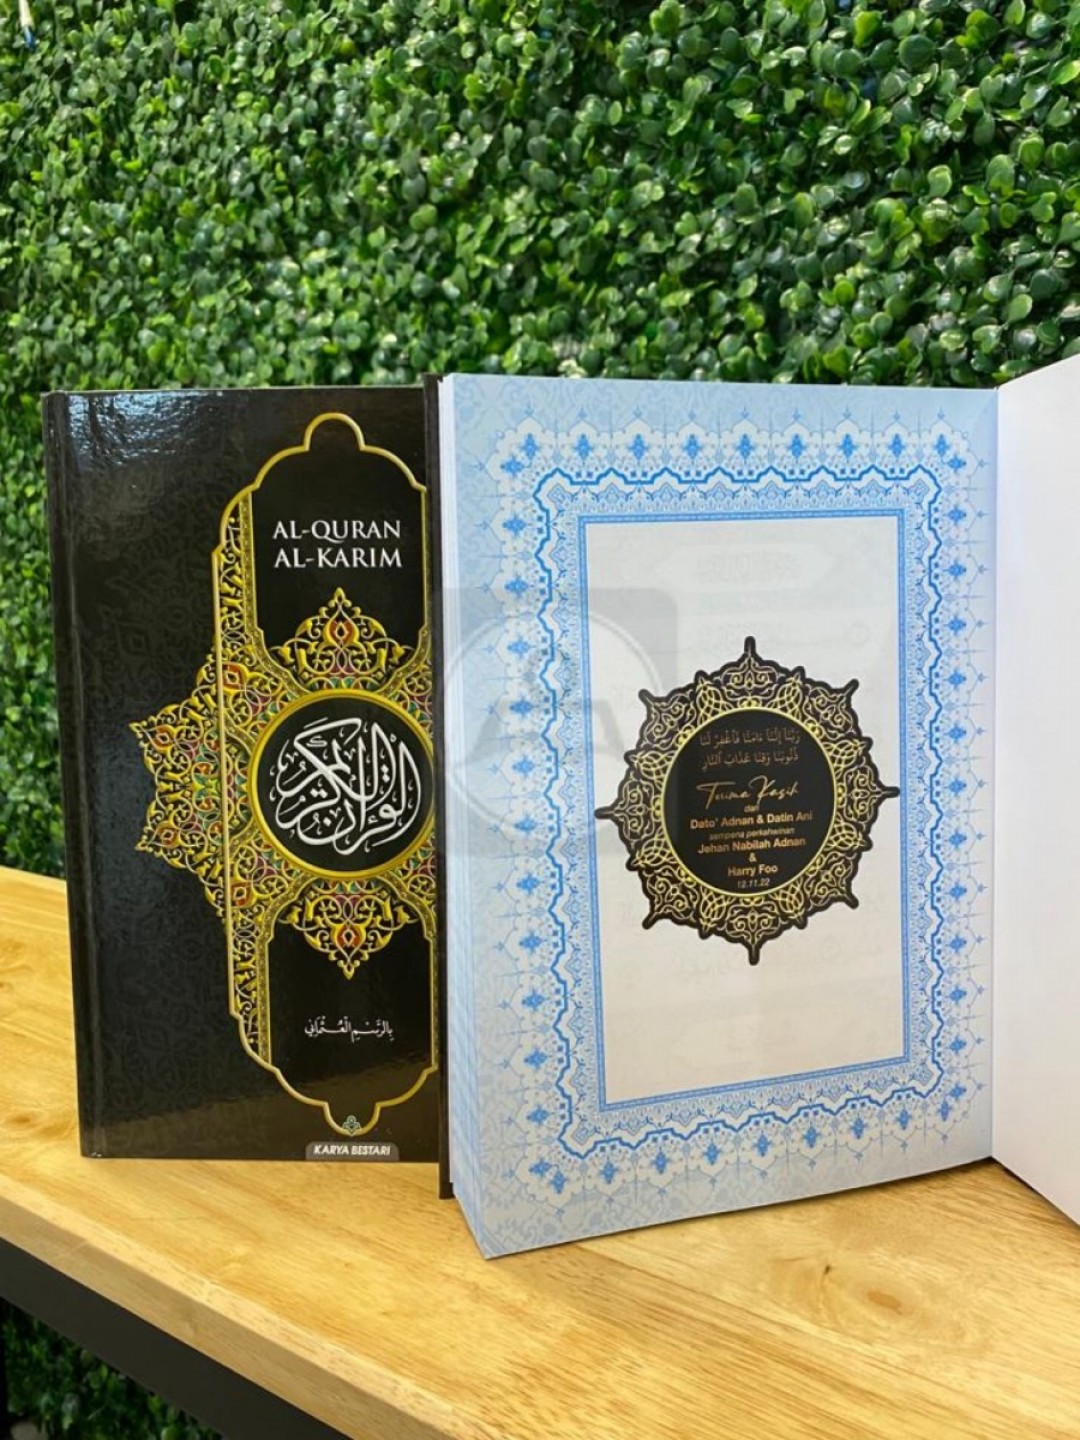 Customized sticker - For Al-Quran